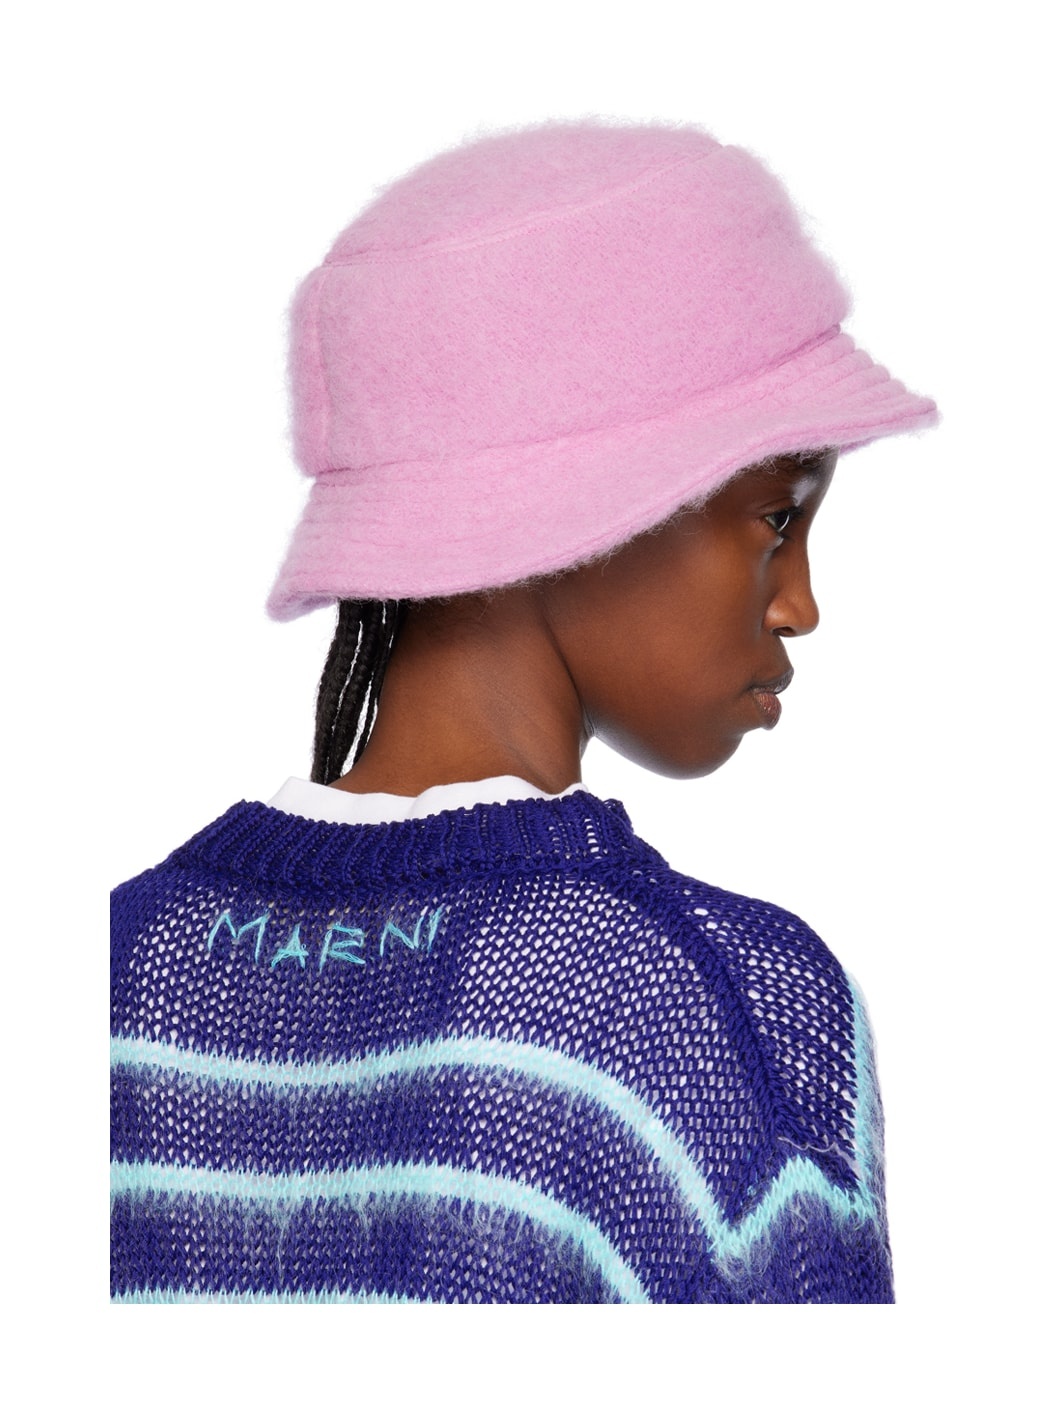 SSENSE Exclusive Pink Furry Bucket Hat - 3